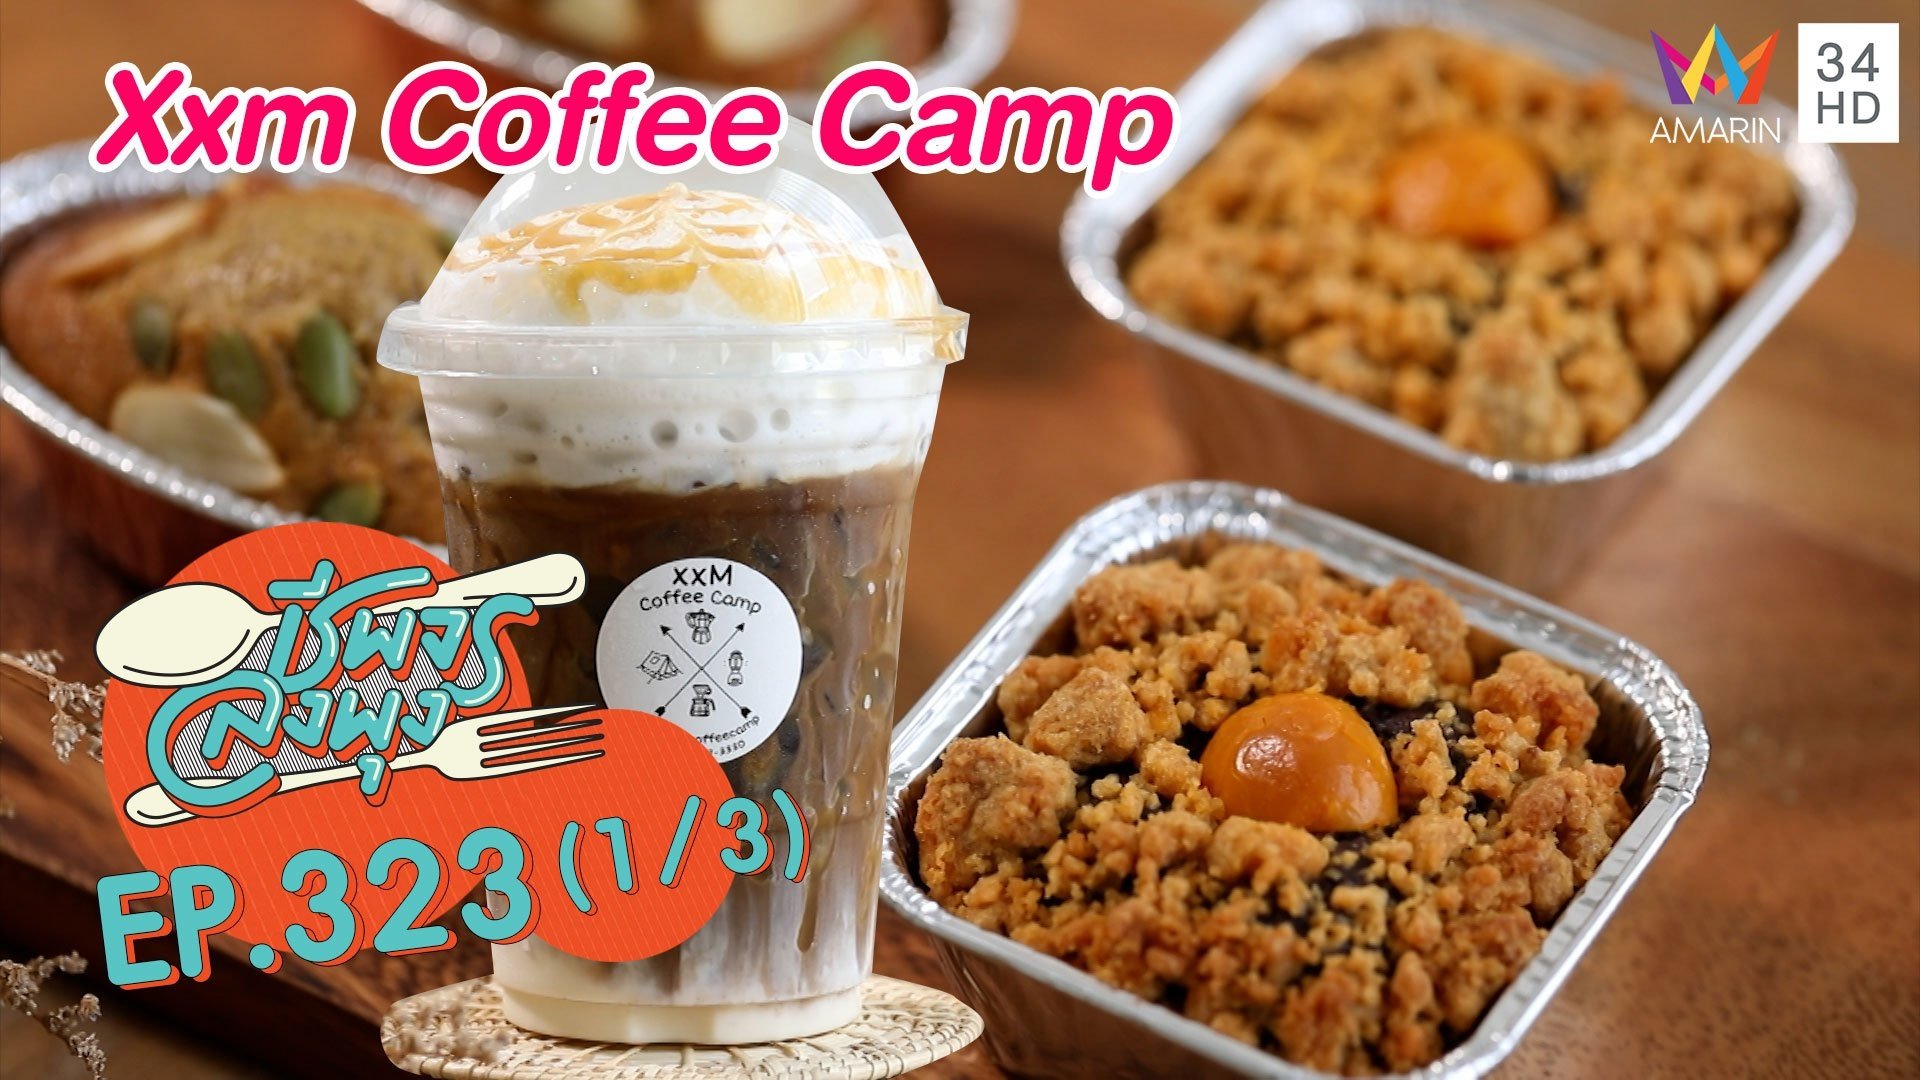 กาแฟรสละมุน @ร้านXxm Coffee Camp | ชีพจรลงพุง | 11 ก.ย. 64 (1/3) | AMARIN TVHD34